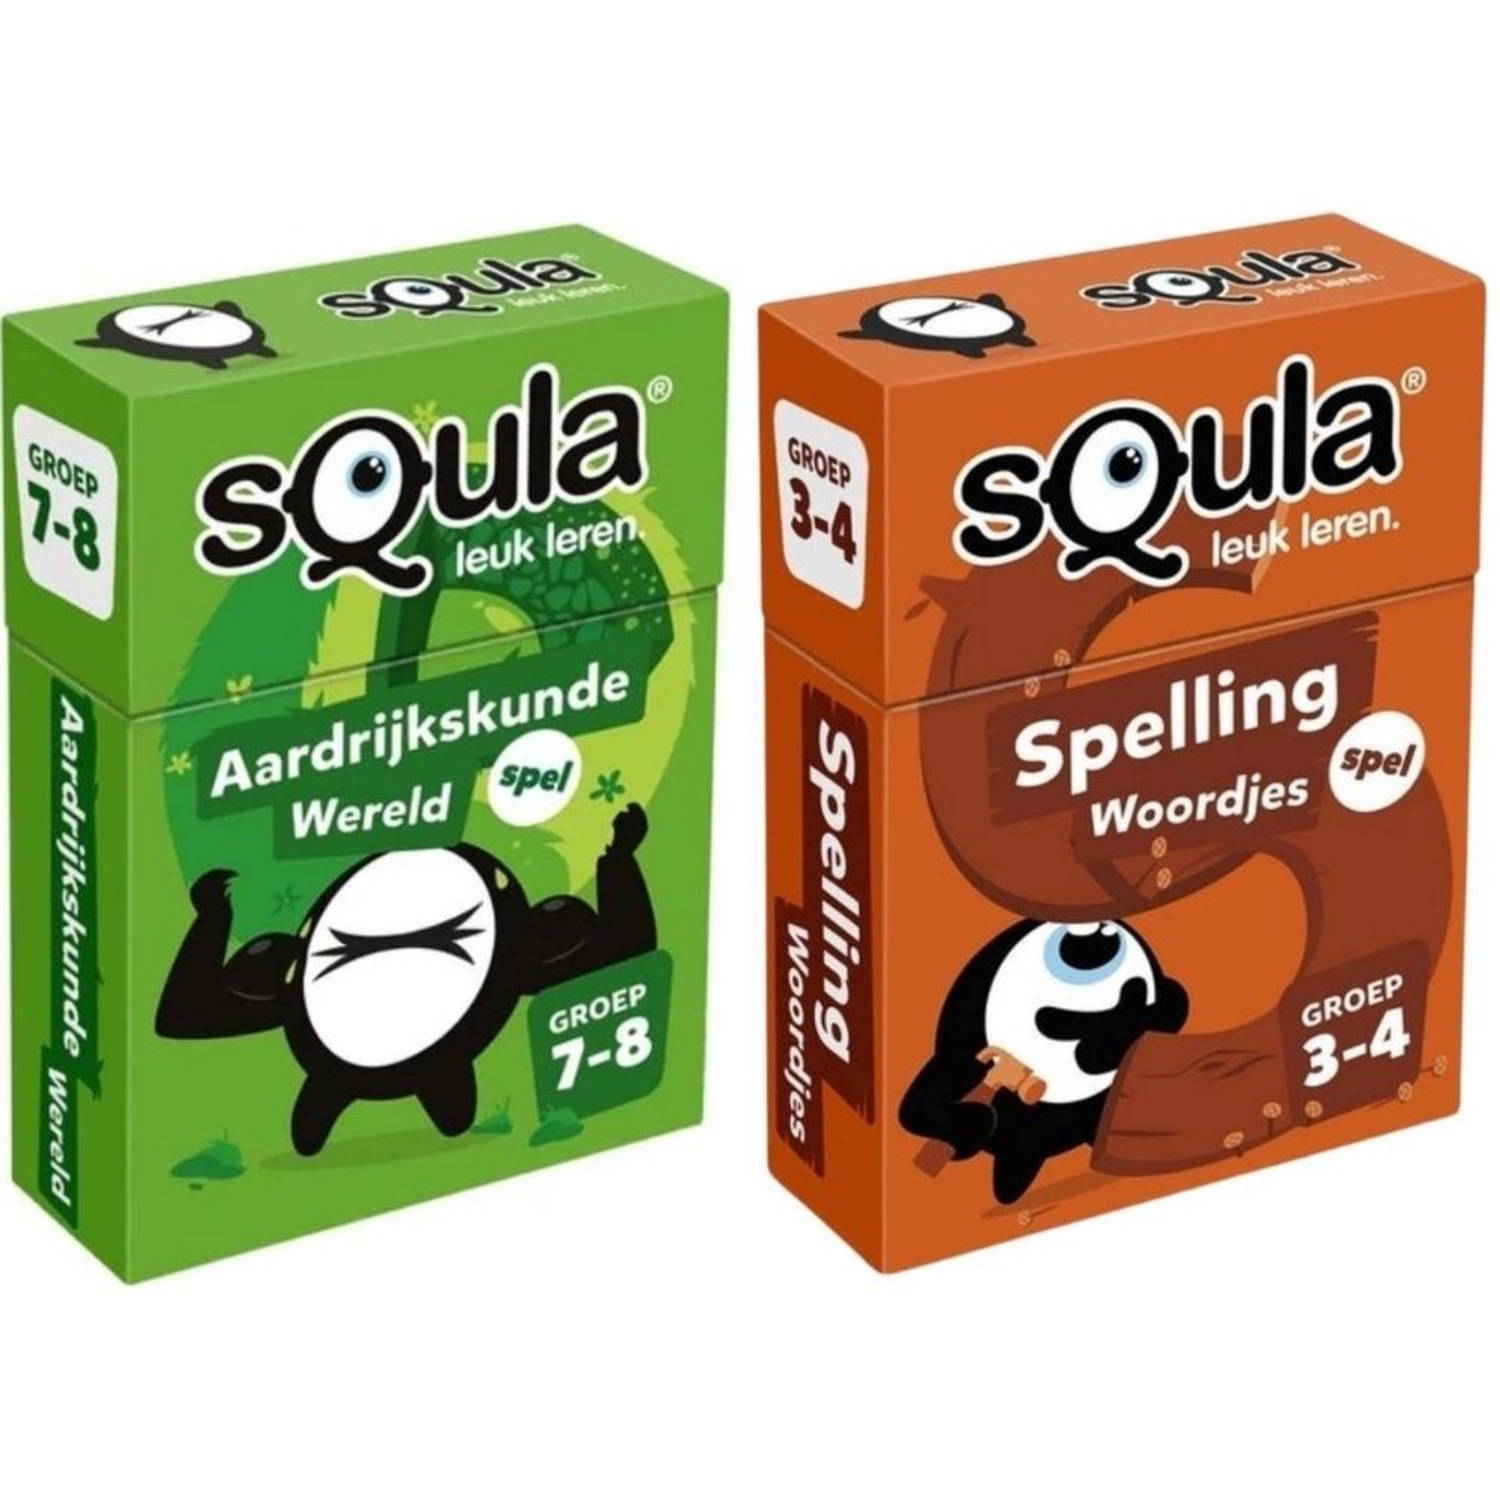 Spellenbundel - Squla - 2 stuks - Groep 3-4 & 7-8 - Aardrijkskunde & Spelling